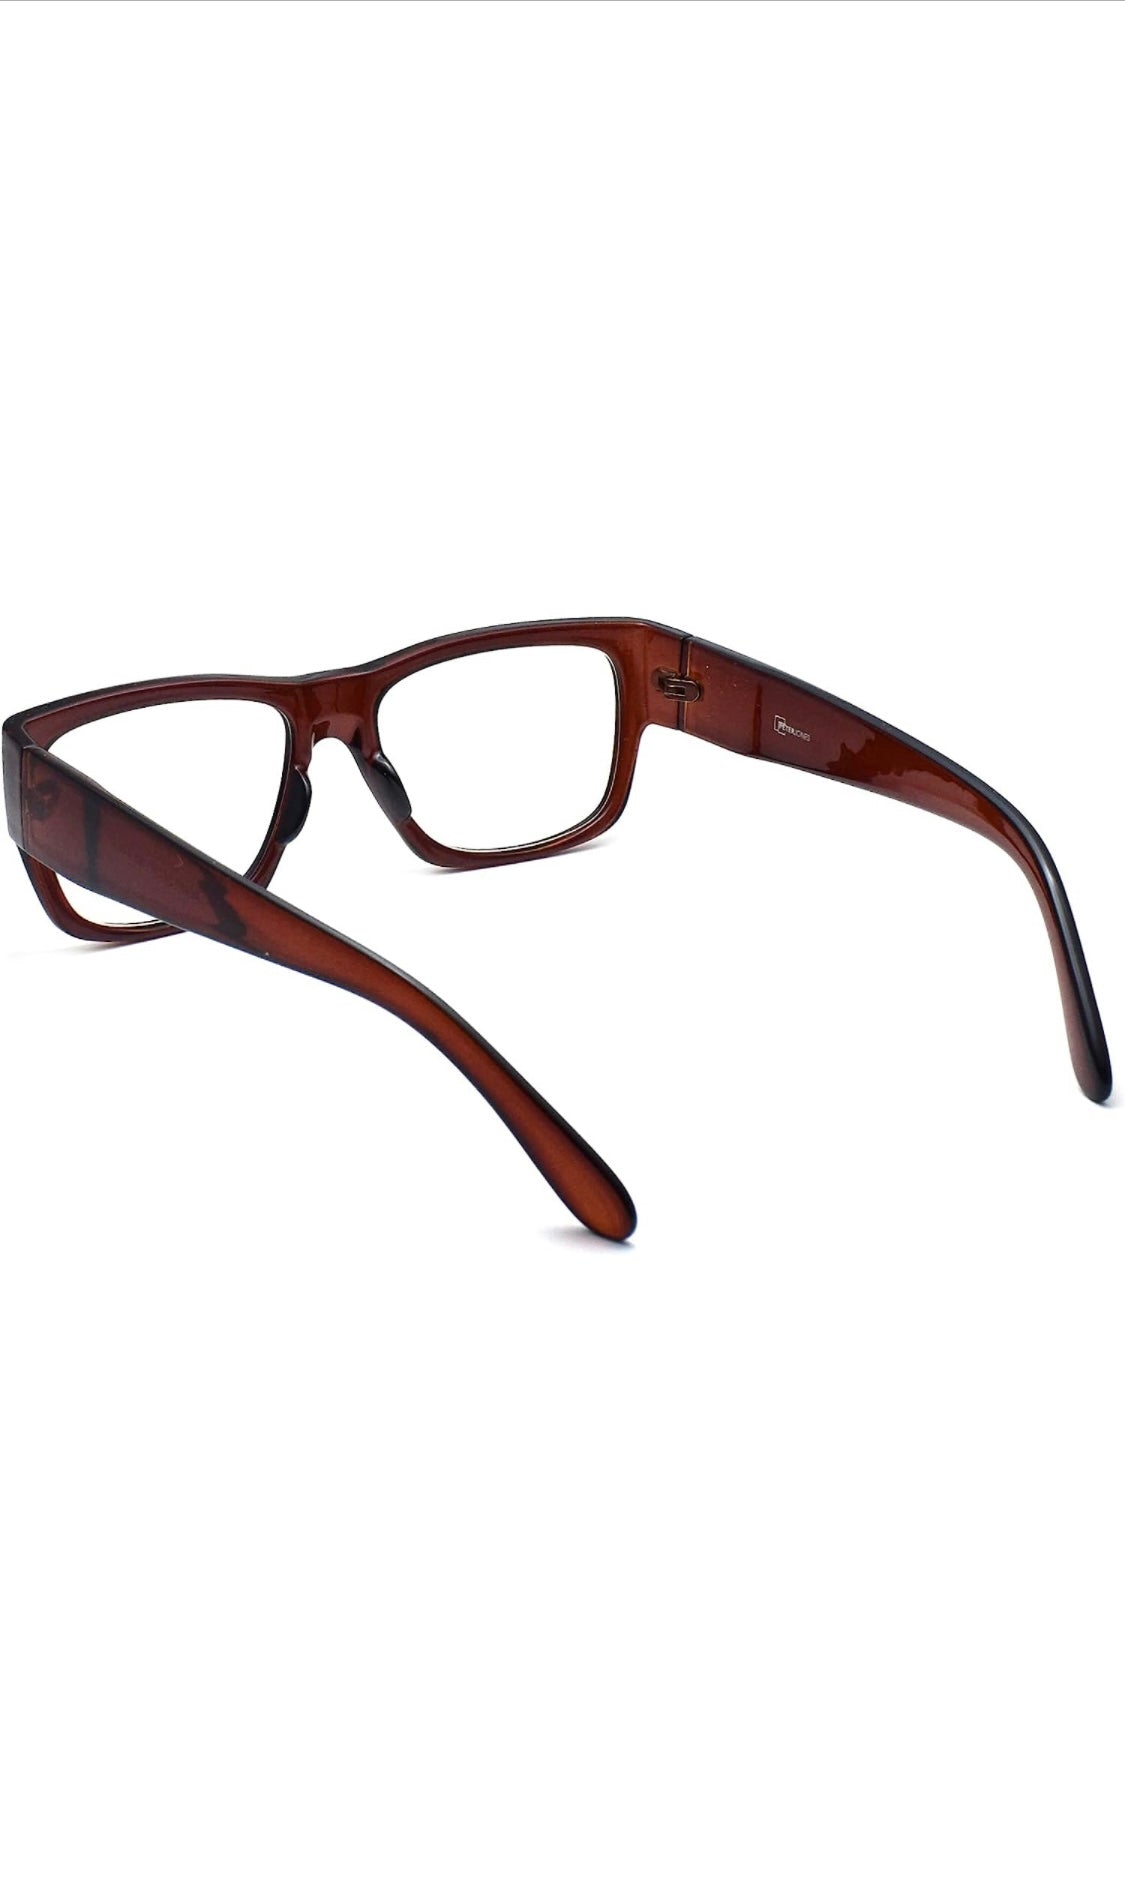 Jodykoes Thick Frame Unisex Anti Glare Eyeglasses Eyewear Spectacle (Brown) - Jodykoes ®